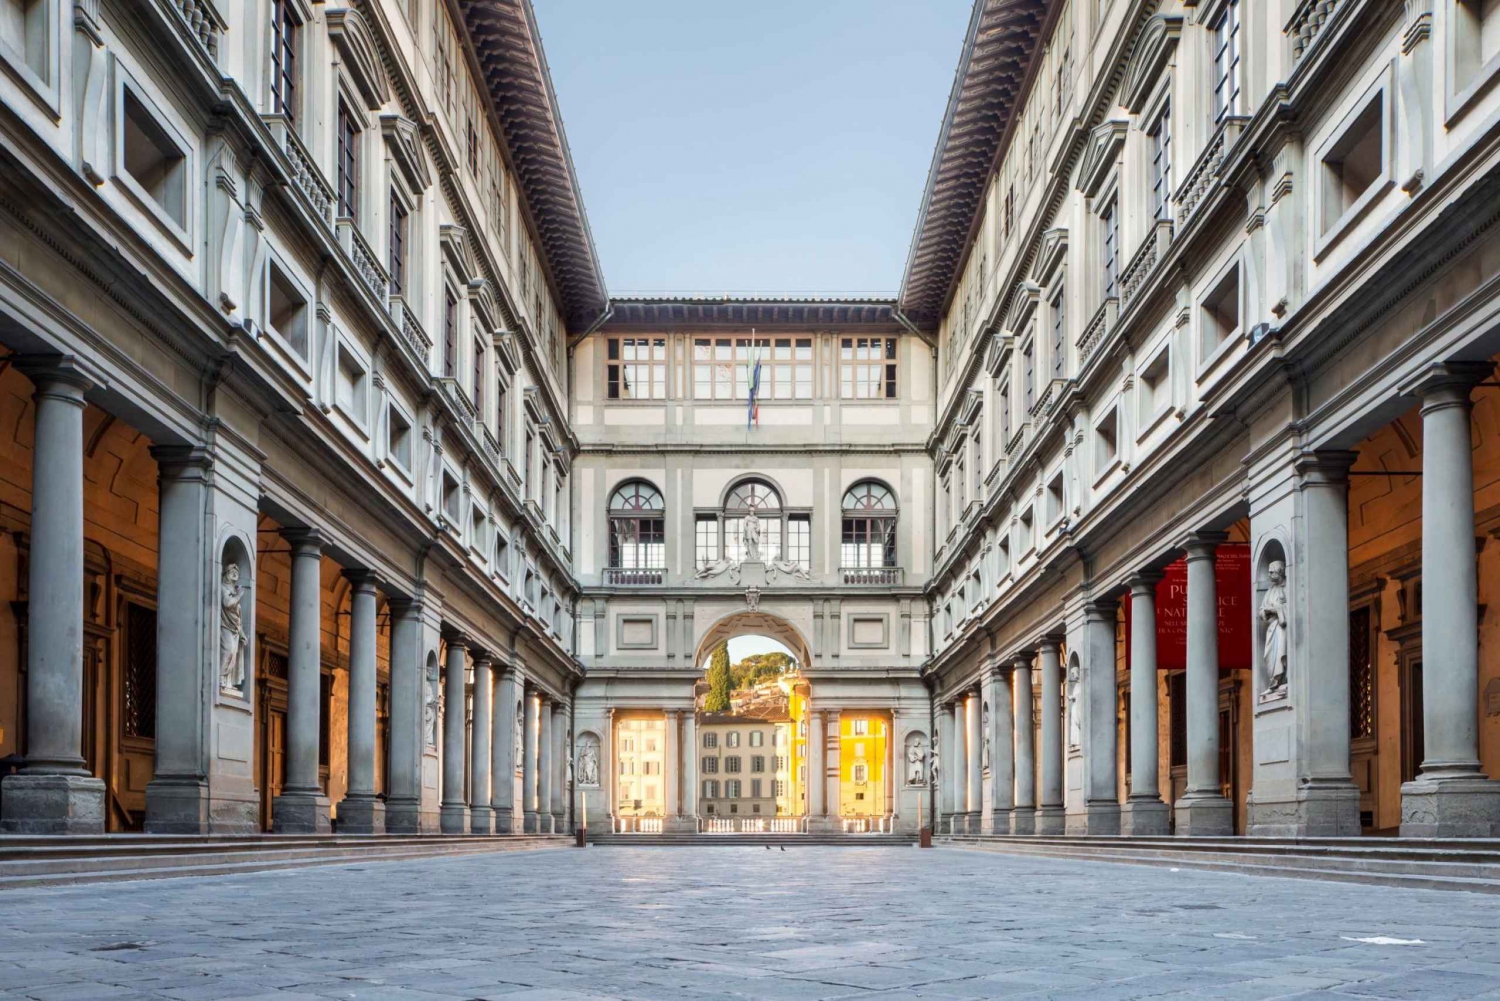 Firenze e Galleria degli Uffizi: tour guidato da Roma